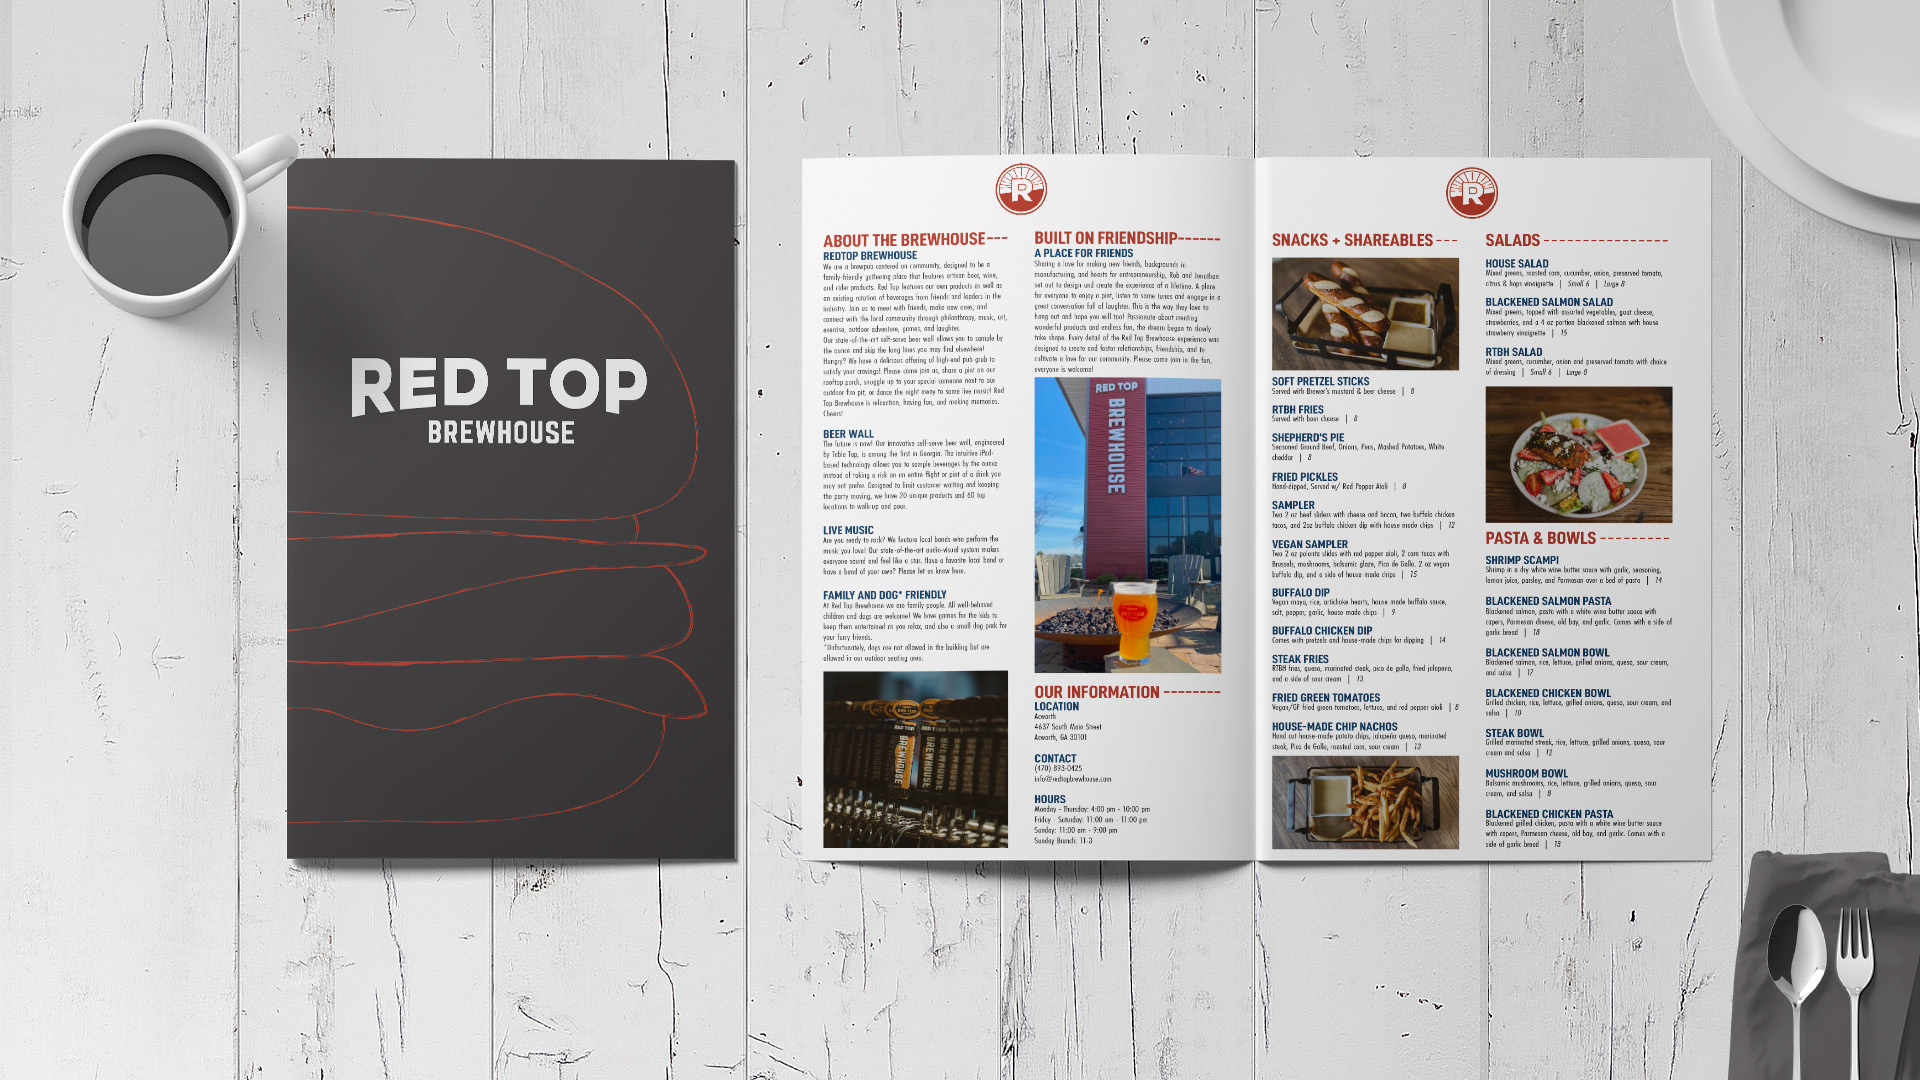 "Red Top Brewhouse Menu Redesign," / "Red Top Brewhouse Menu Redesign," printed menu, 11 x 17 inch printed, 2022. A redesign for the menu of a local brewhouse in Acworth, GA.  